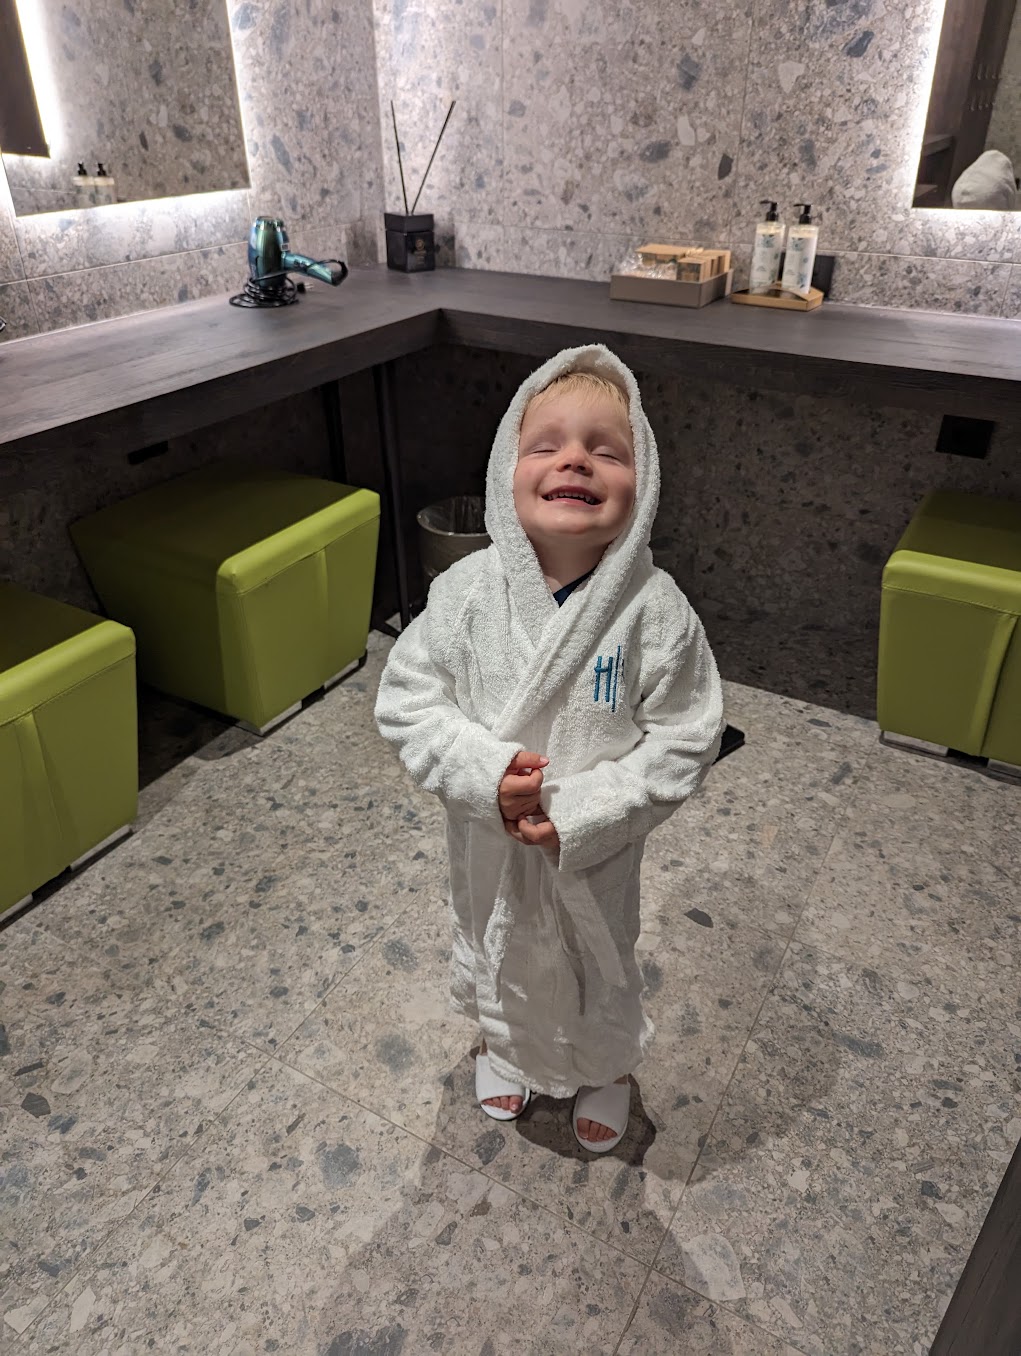 a child in a bathrobe